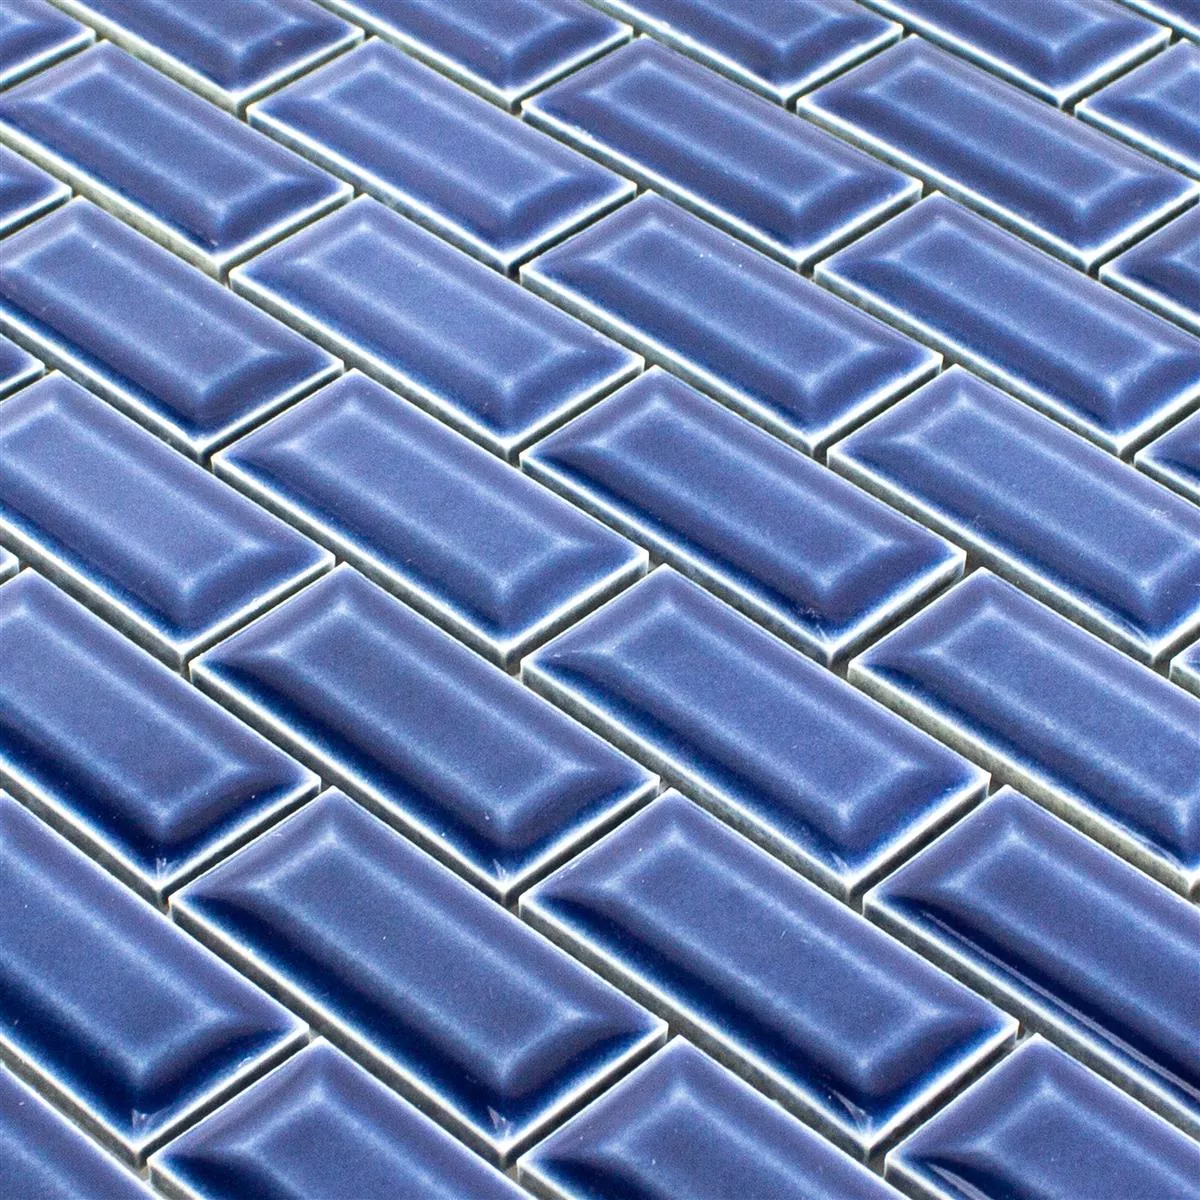 Ceramic Mosaic Tiles Organica Metro Blue